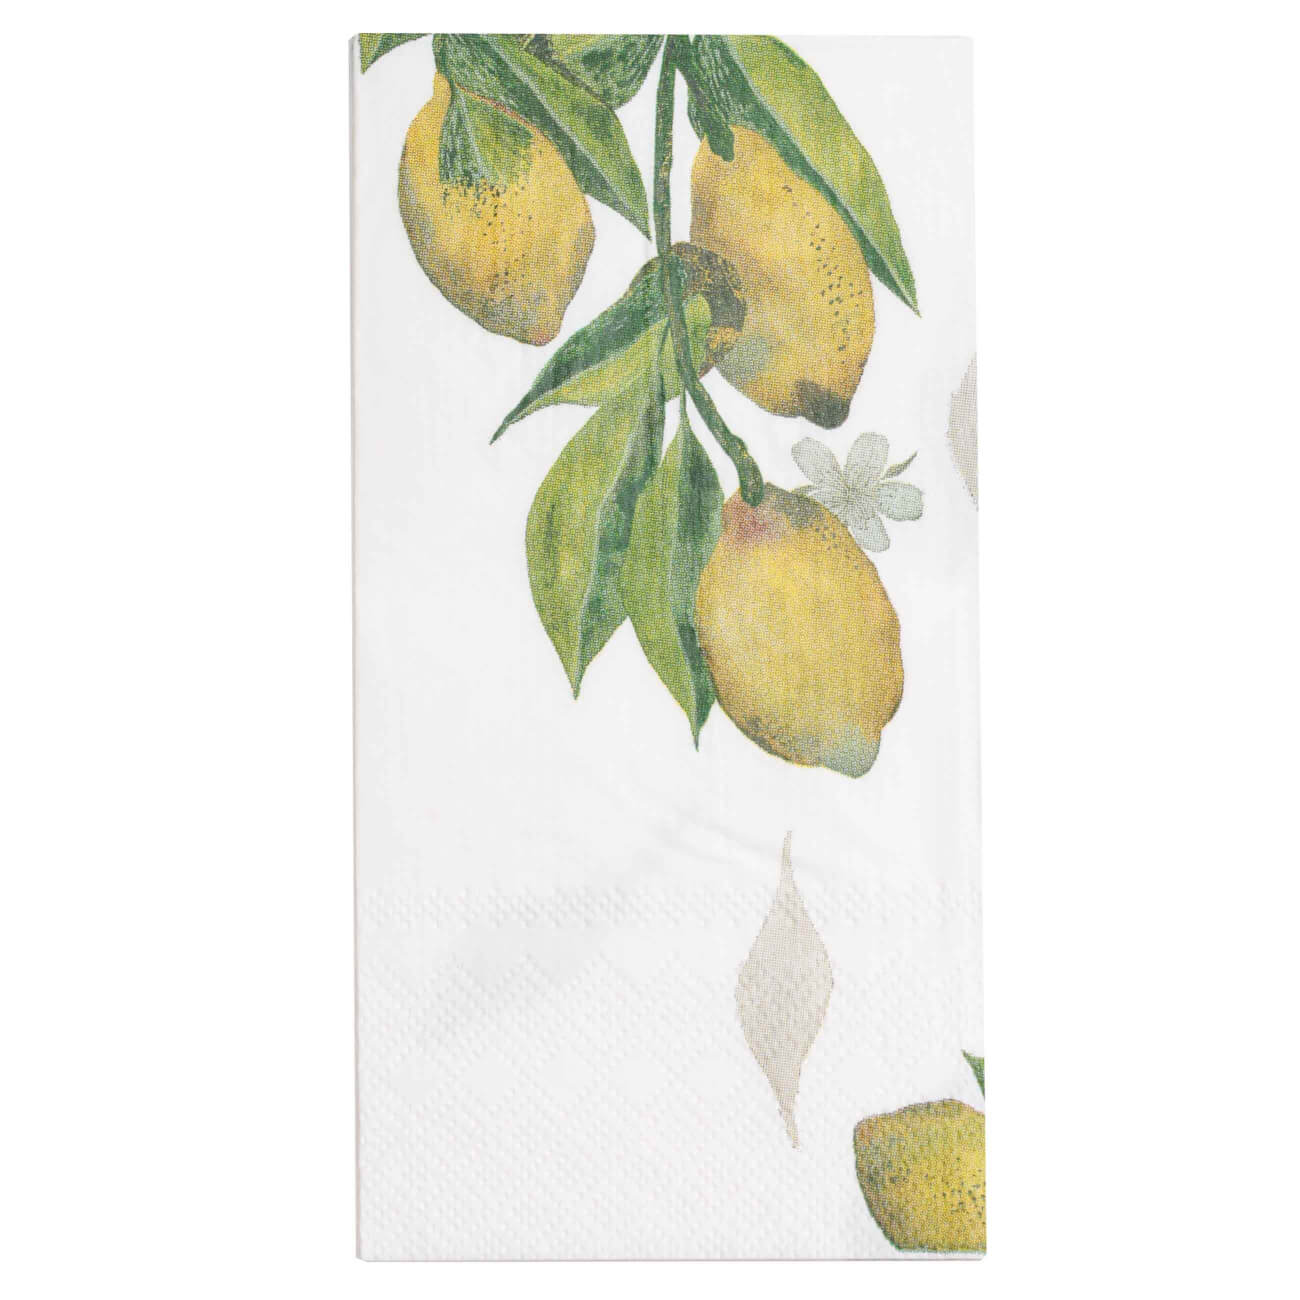 Салфетки бумажные, 33х33 см, 20 шт, прямоугольные, белые, Лимоны на ветке, Sicily in bloom салфетки бумажные 33х33 см 20 шт прямоугольные белые золотистый мрамор maniera